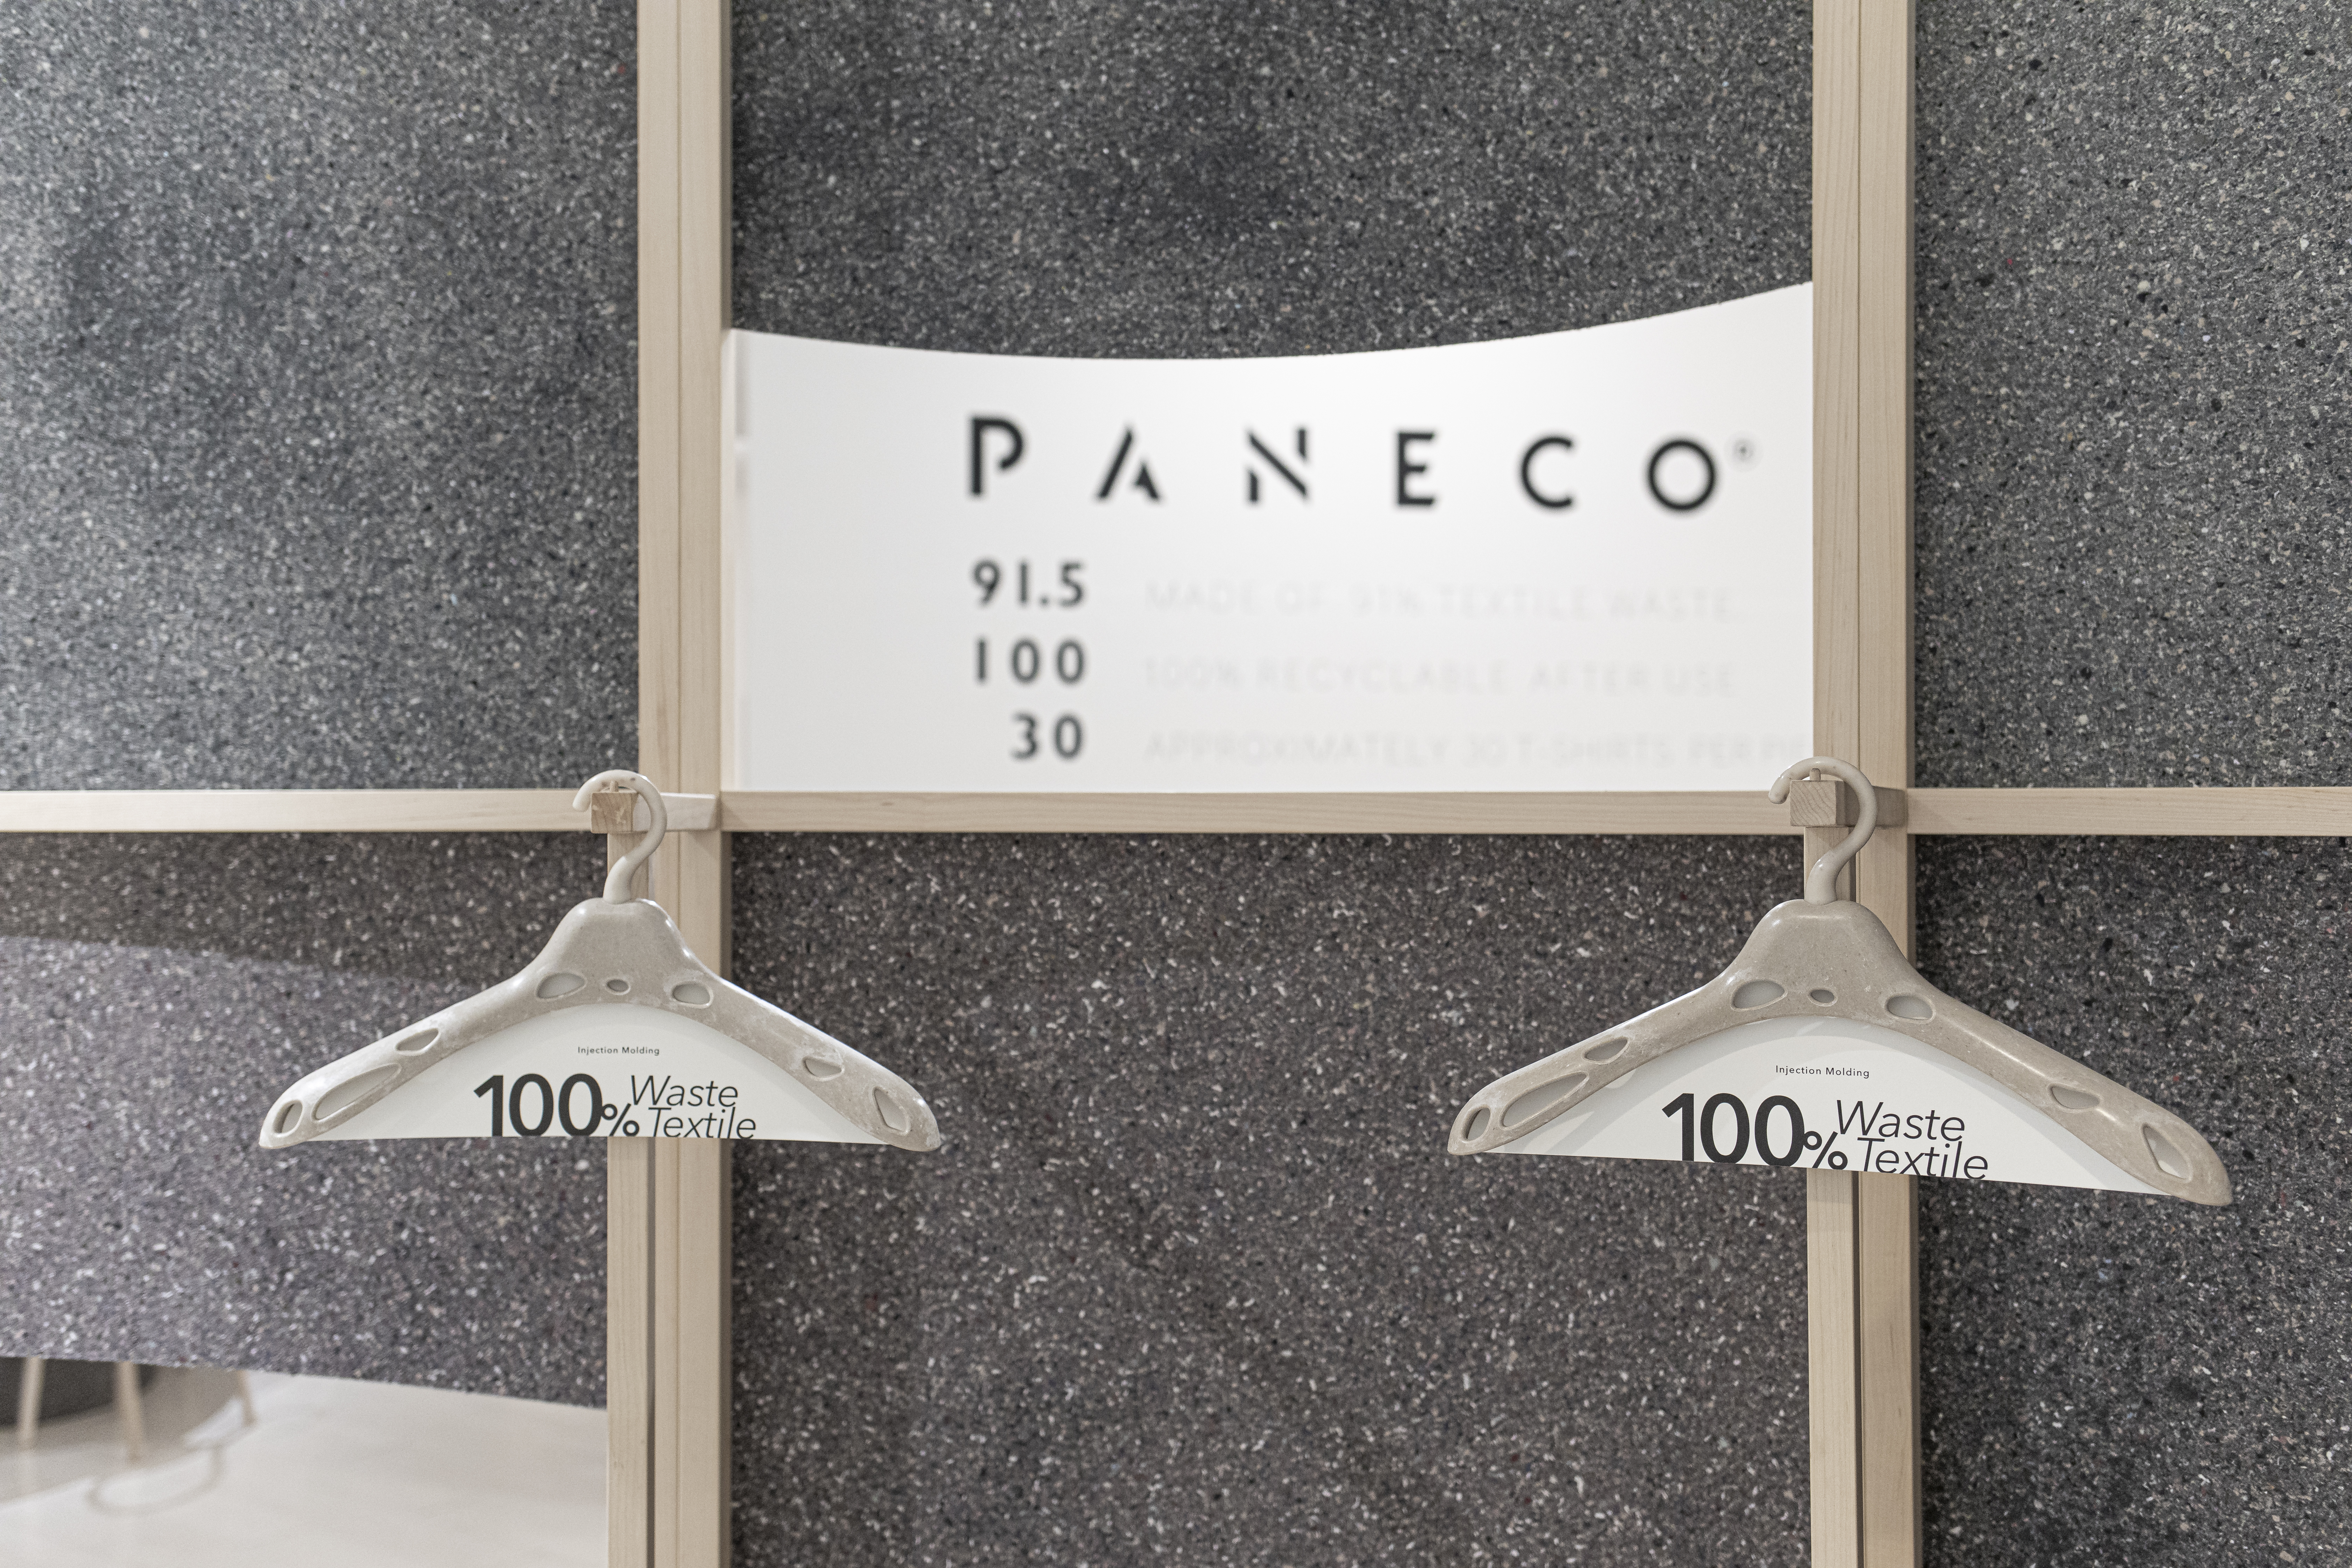 PANECO ハンガー | 100%廃棄衣類繊維アップサイクル素材 | サスティナブルなハンガー | 脱プラに貢献